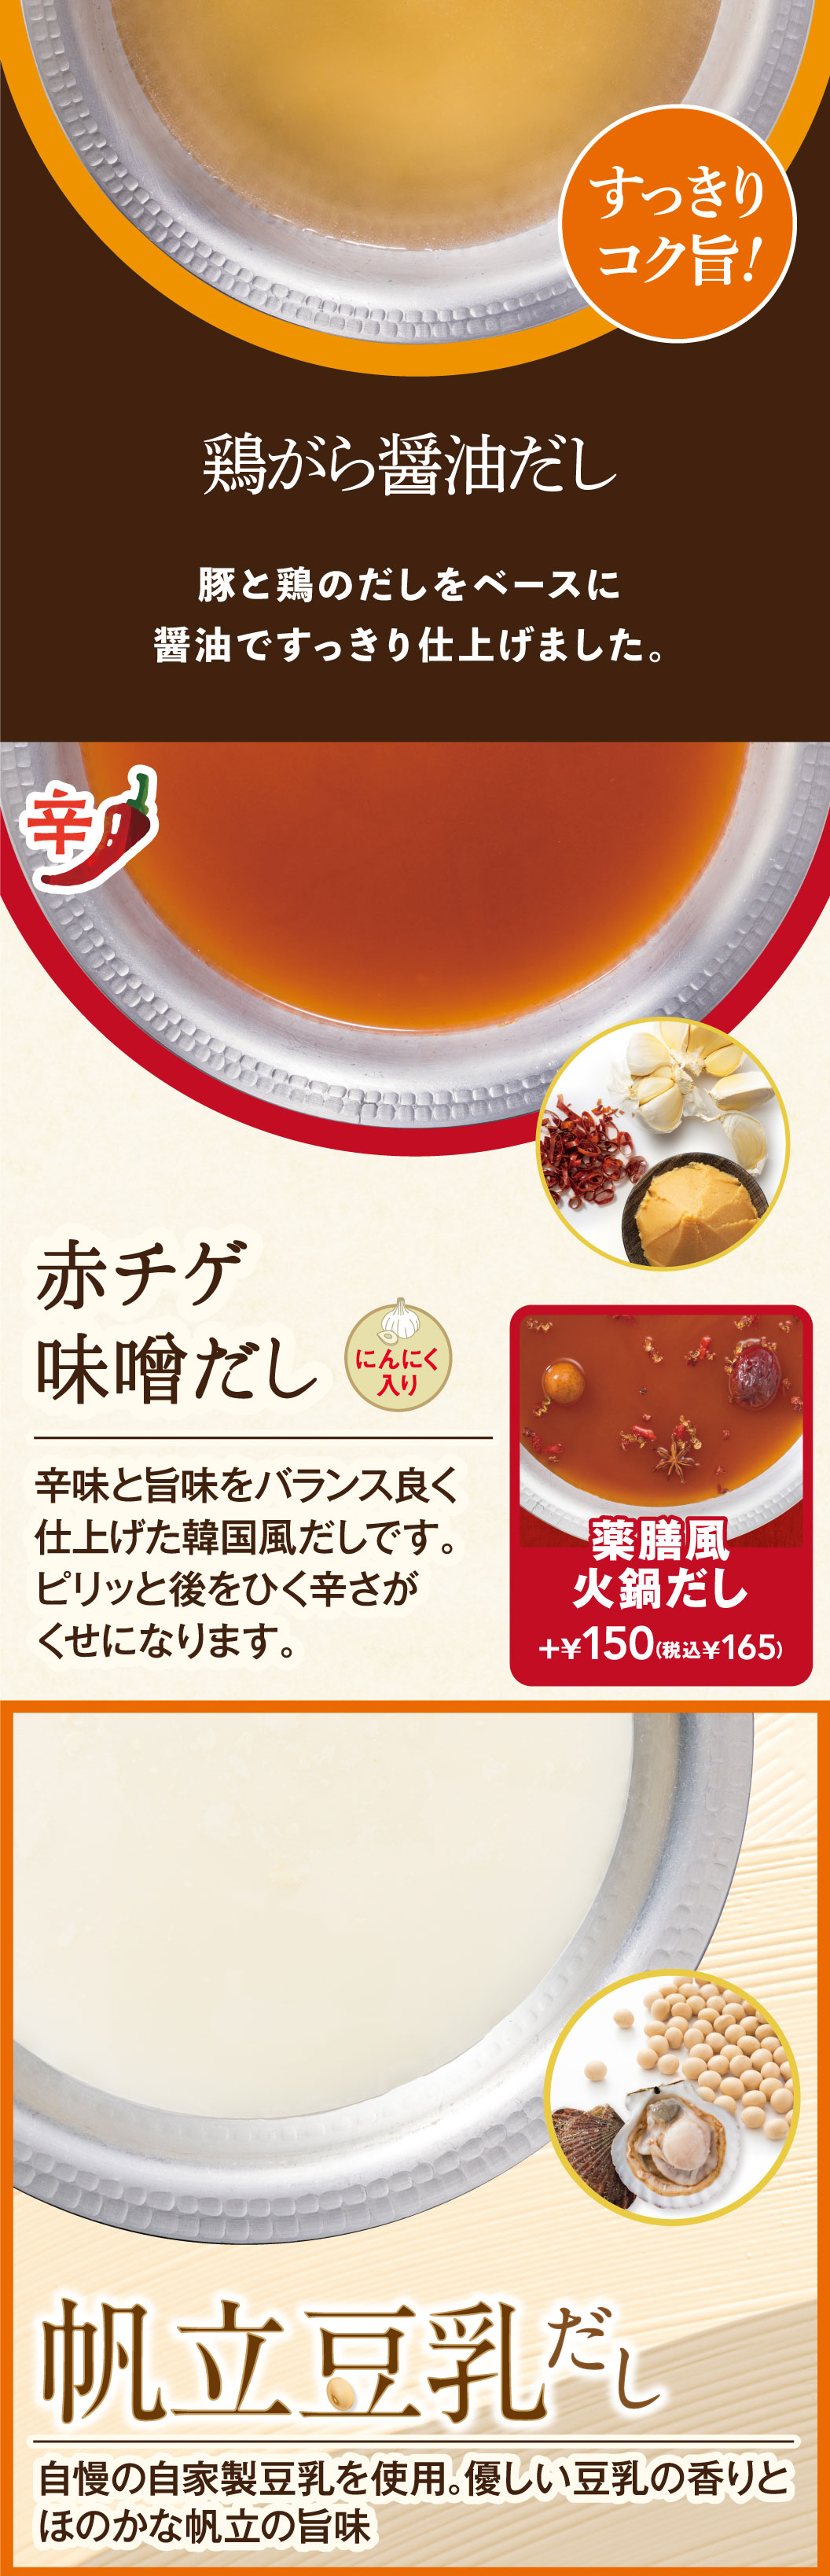 น้ำสต๊อกมิโซะจิเกแดง, น้ำสต๊อกนมถั่วเหลืองหอยเชลล์